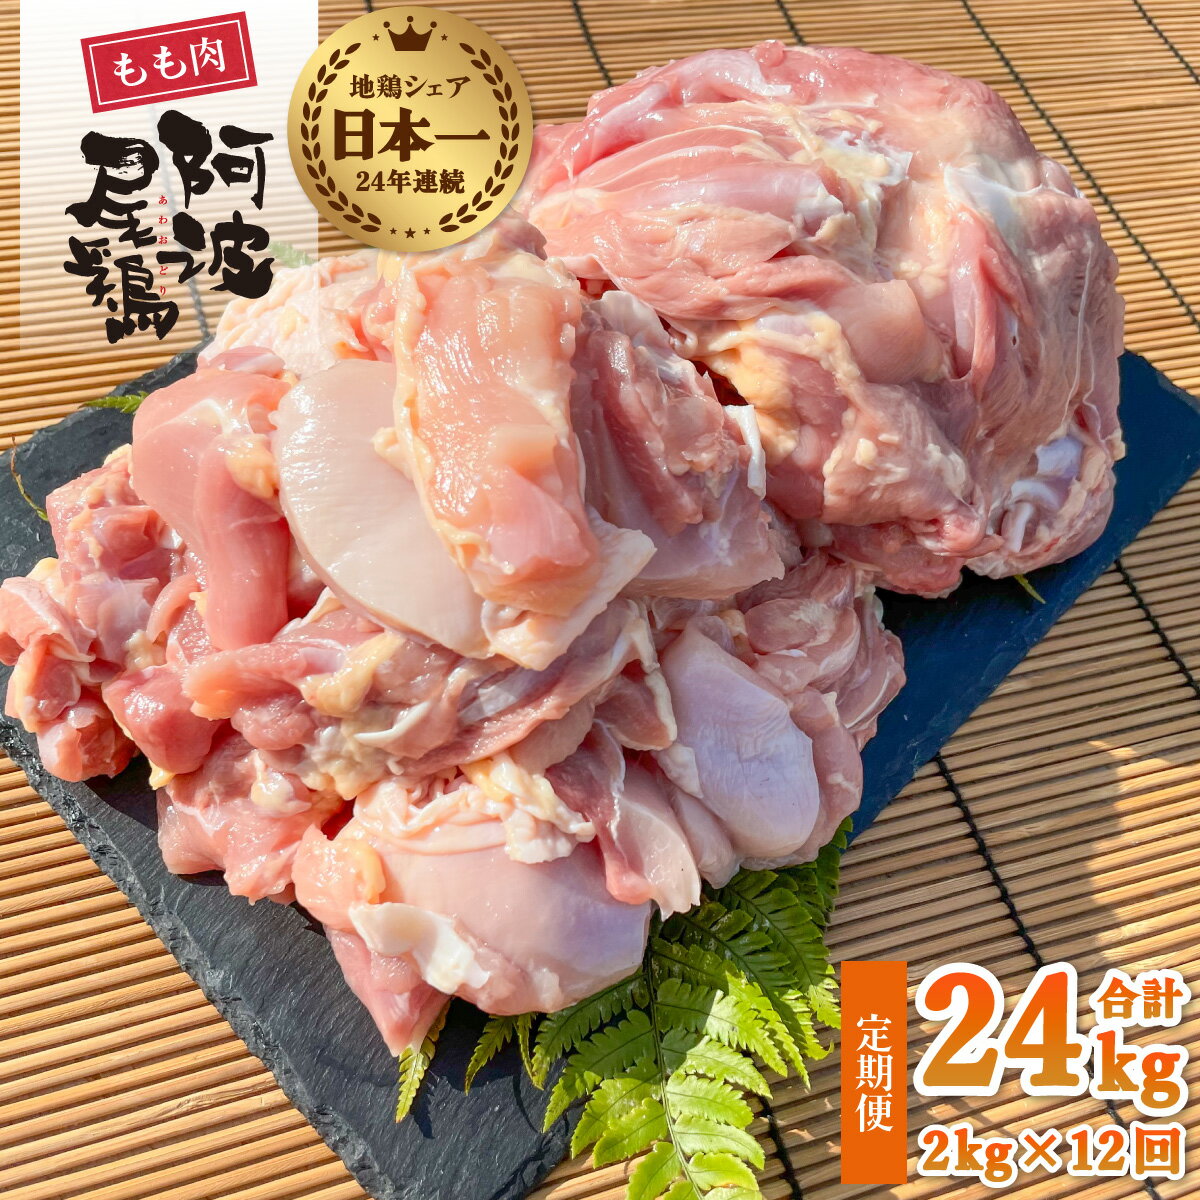 【ふるさと納税】 最高級 地鶏 鶏もも 12ヶ月 定期便 国産 日本一 阿波尾鶏 小分け 約24kg (約2kg×12回) 冷凍 切り身 正肉 あわおどり 鶏もも肉 鶏モモ 鶏モモ肉